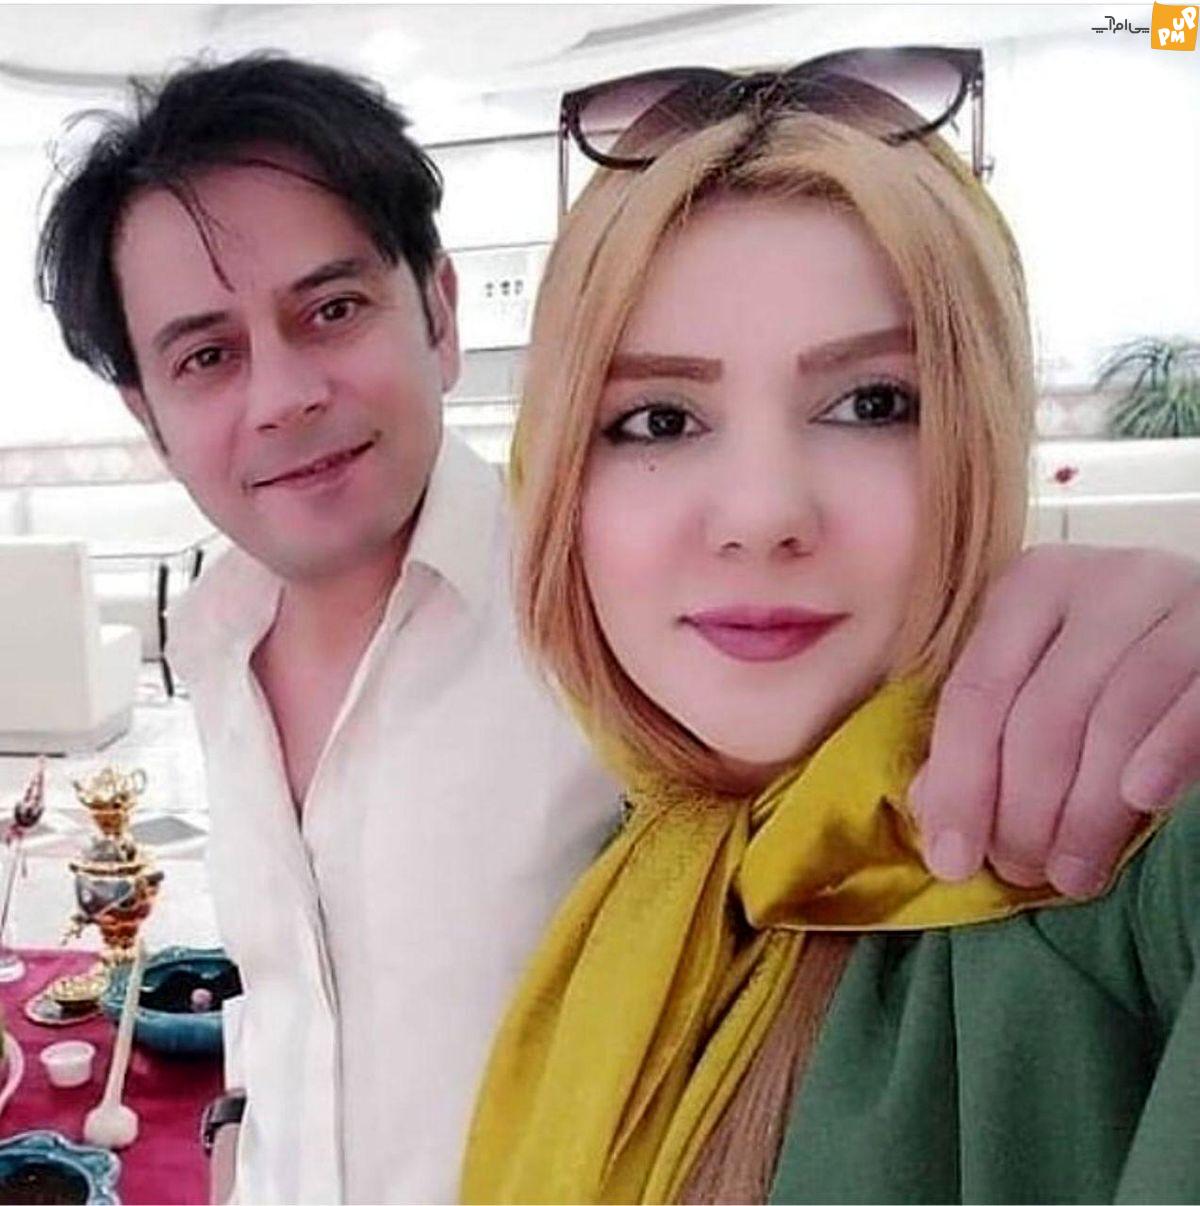 بازیگر مشهور ایرانی برای سومین بار طلاق گرفت! / جدایی جنجالی زوج معروف + عکس